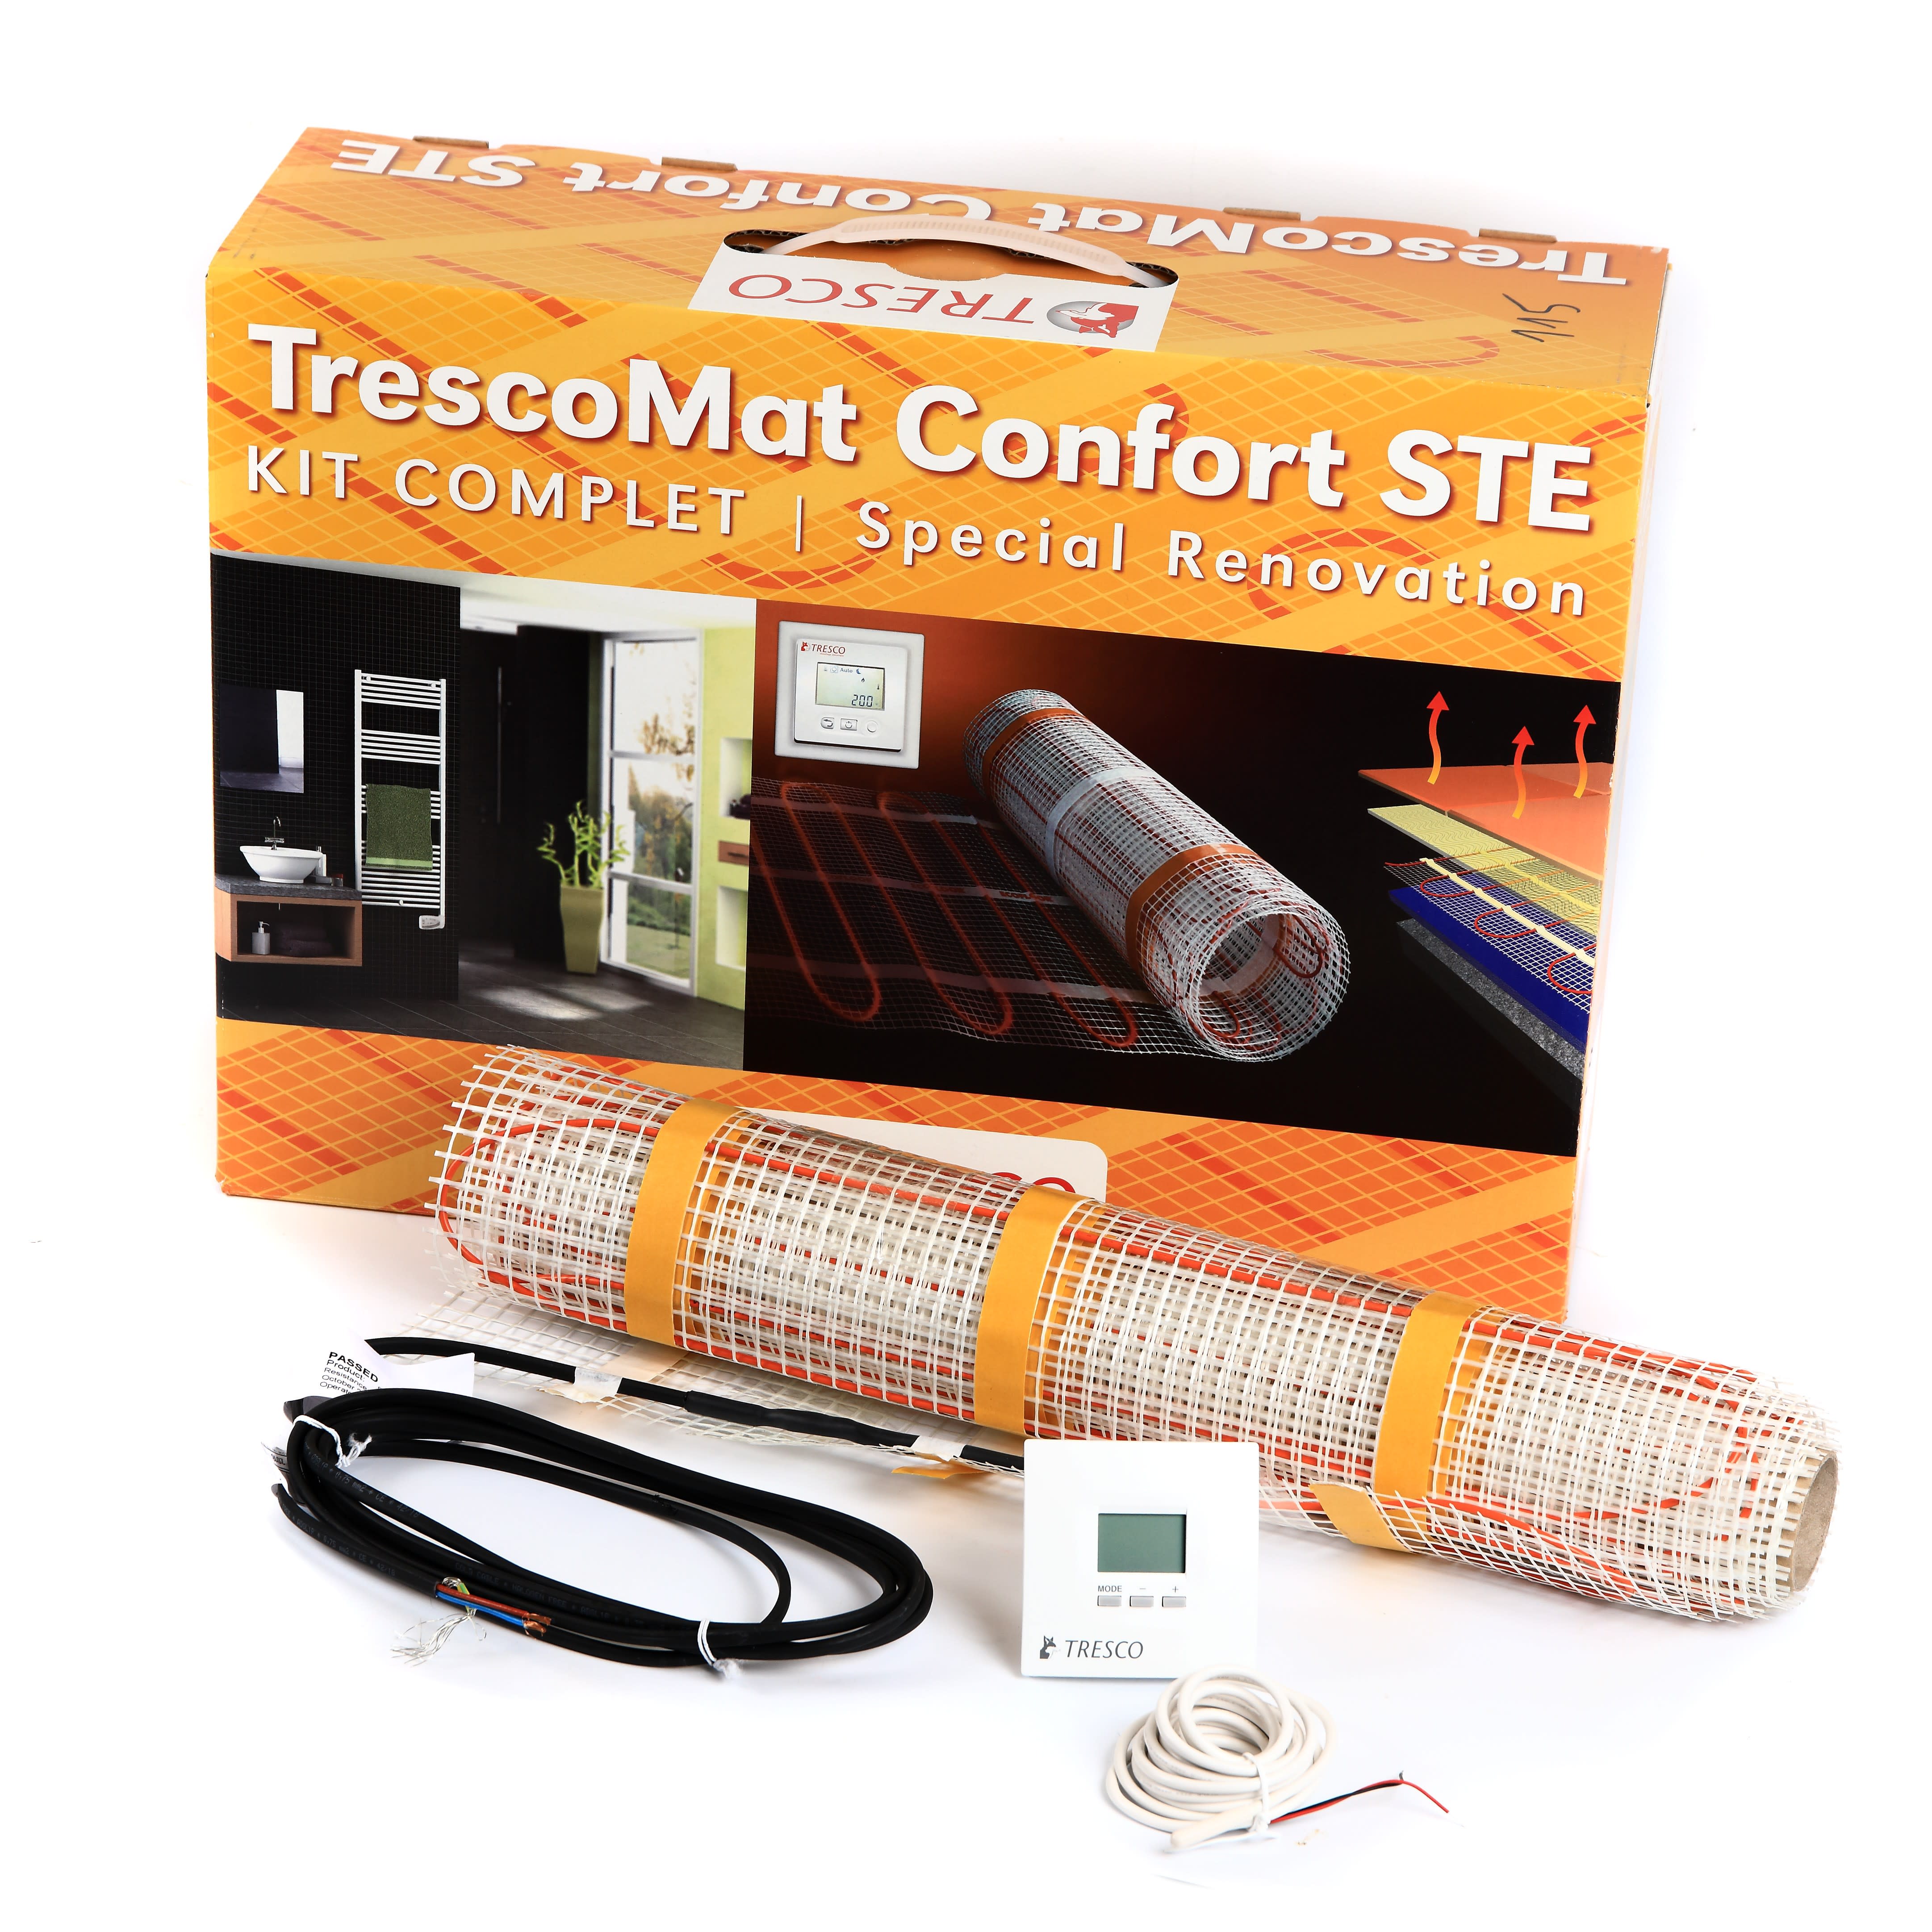 Tresco - Cable chauffant TRESCOMAT CONFORT STE 1600 W